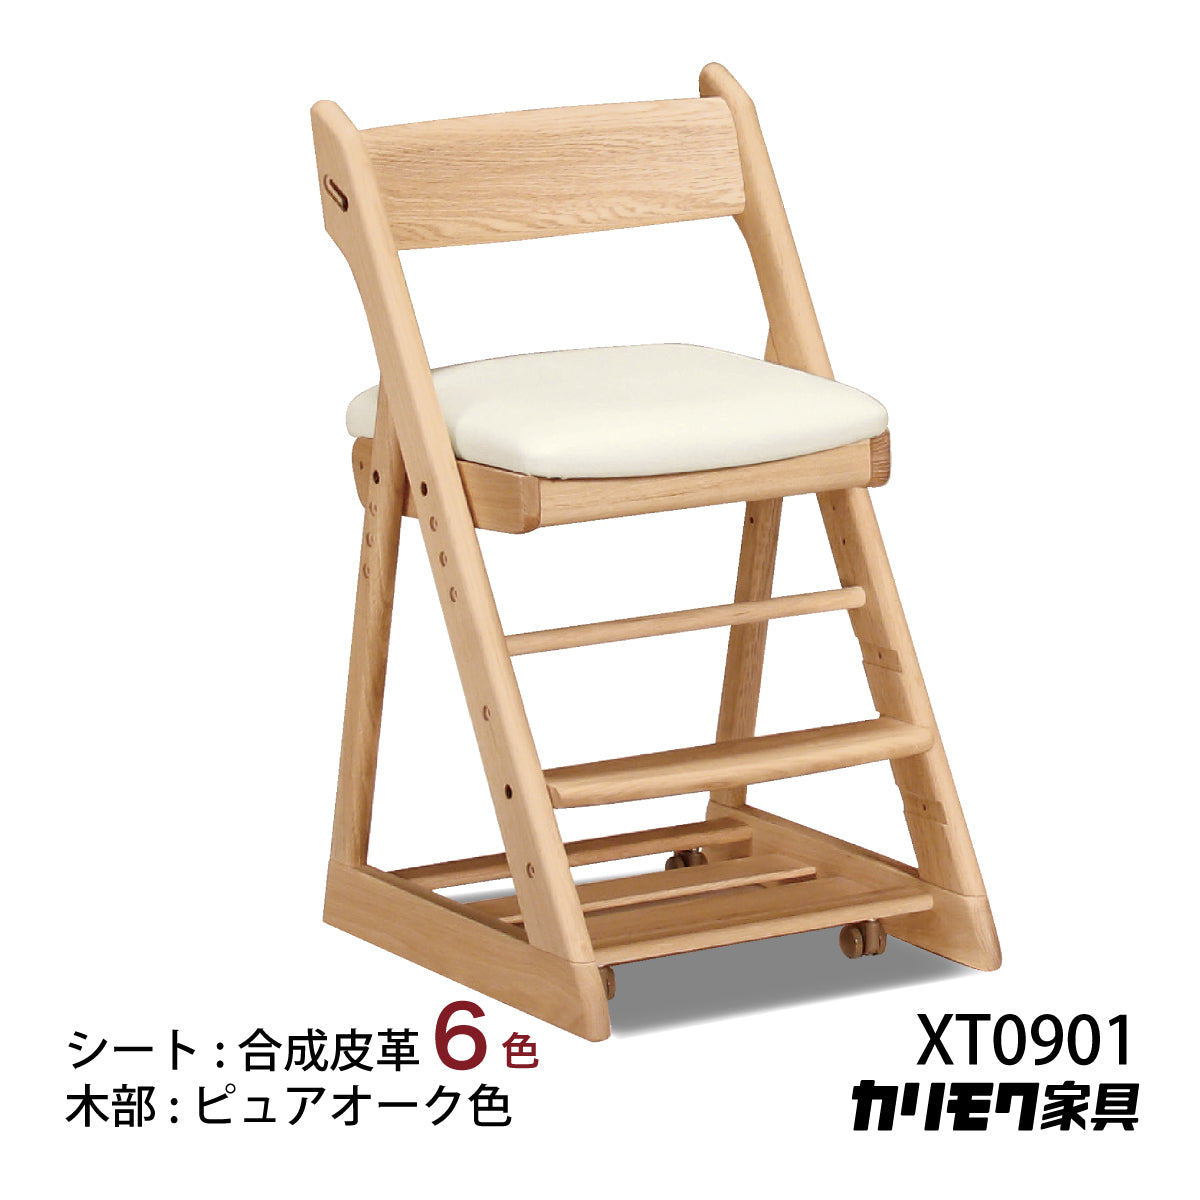 カリモク 学習椅子 XT0901 ピュアオーク色 オーク材 デスクチェア ...